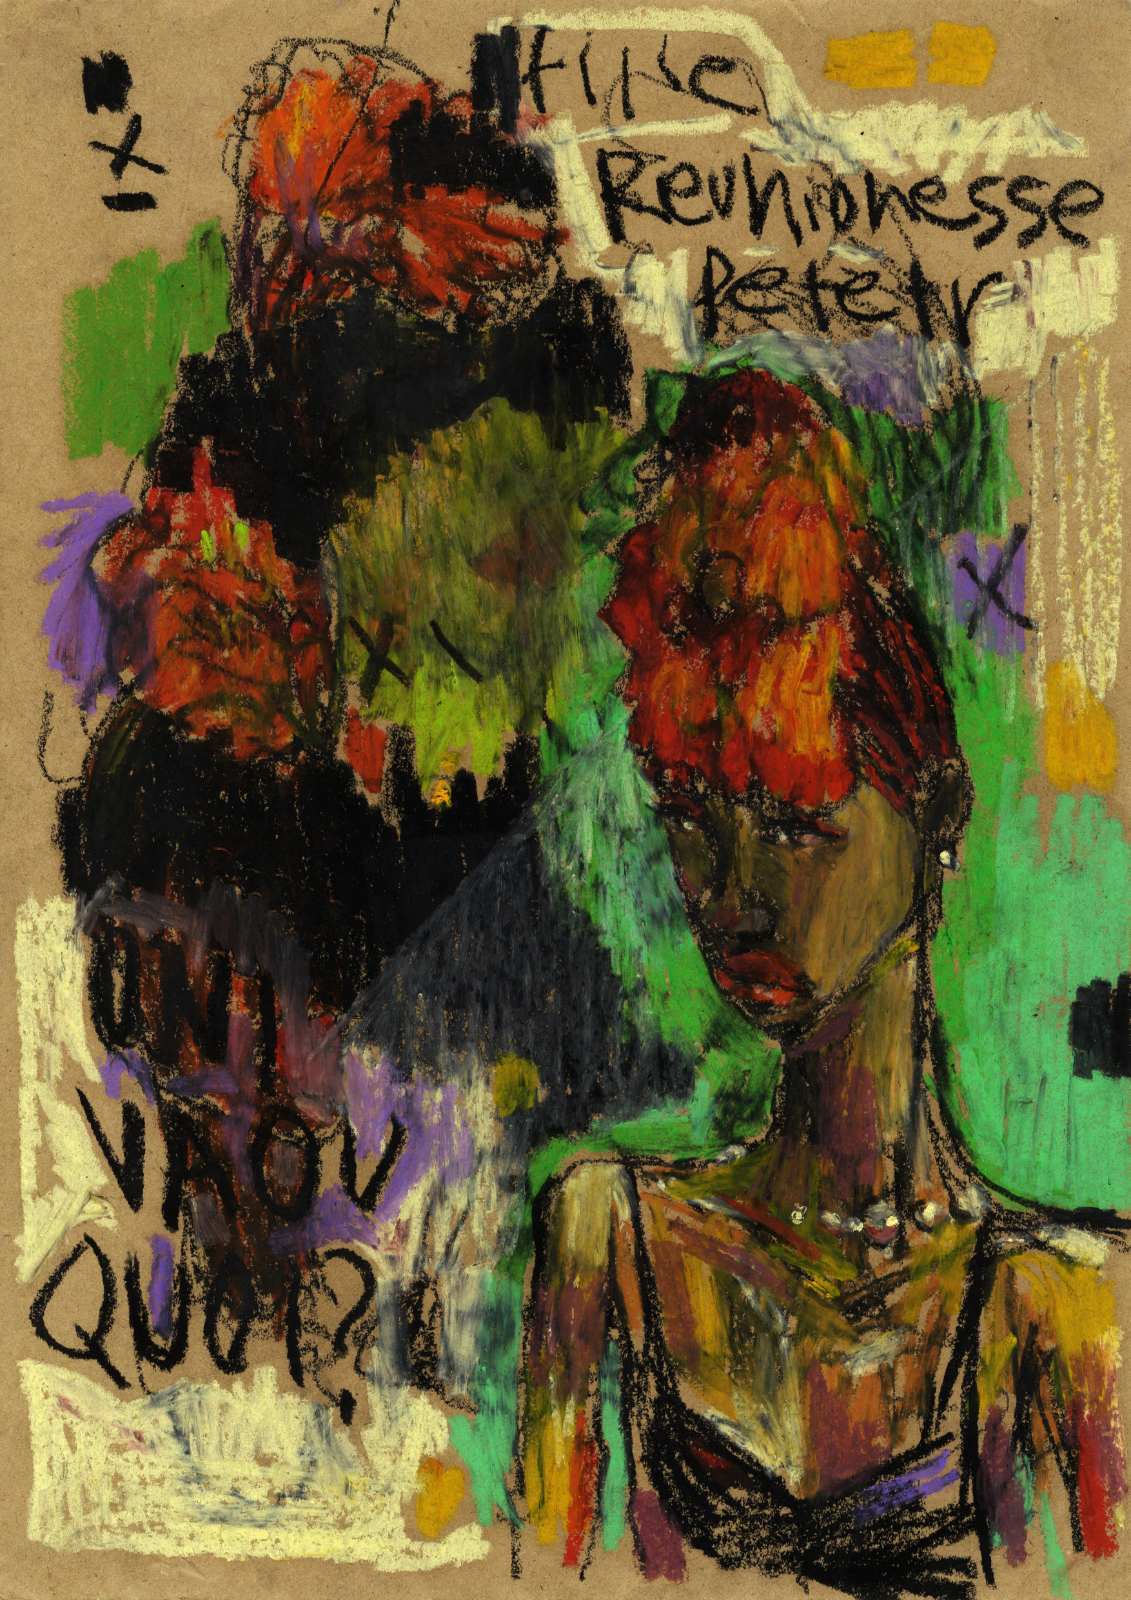 Fille Reunionnaise, oil pastel on paper, 30 x 40 cm, 2016